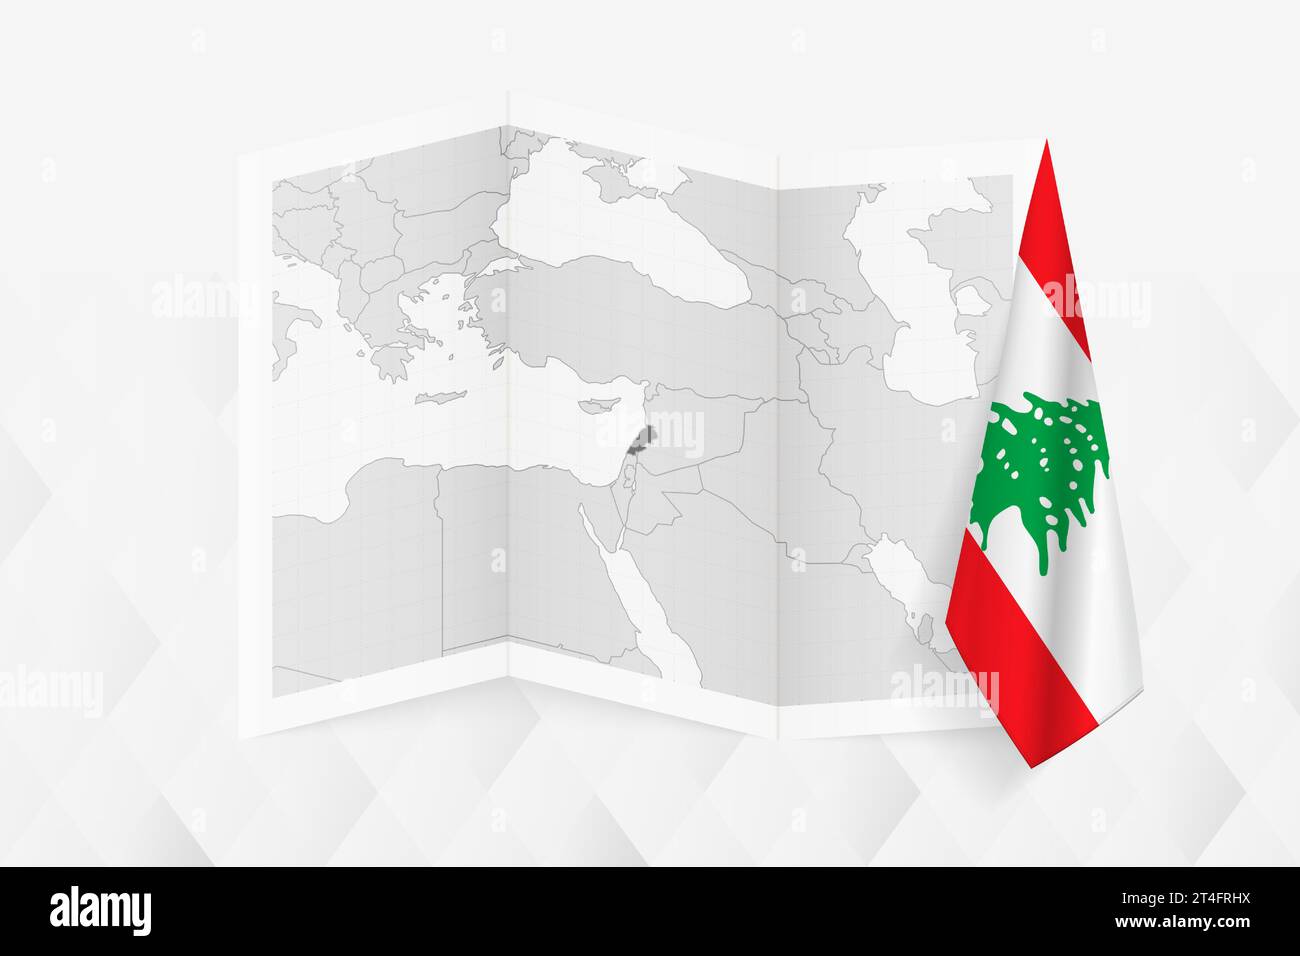 Une carte en niveaux de gris du Liban avec un drapeau libanais suspendu sur un côté. Carte vectorielle pour de nombreux types de nouvelles. Illustration vectorielle. Illustration de Vecteur